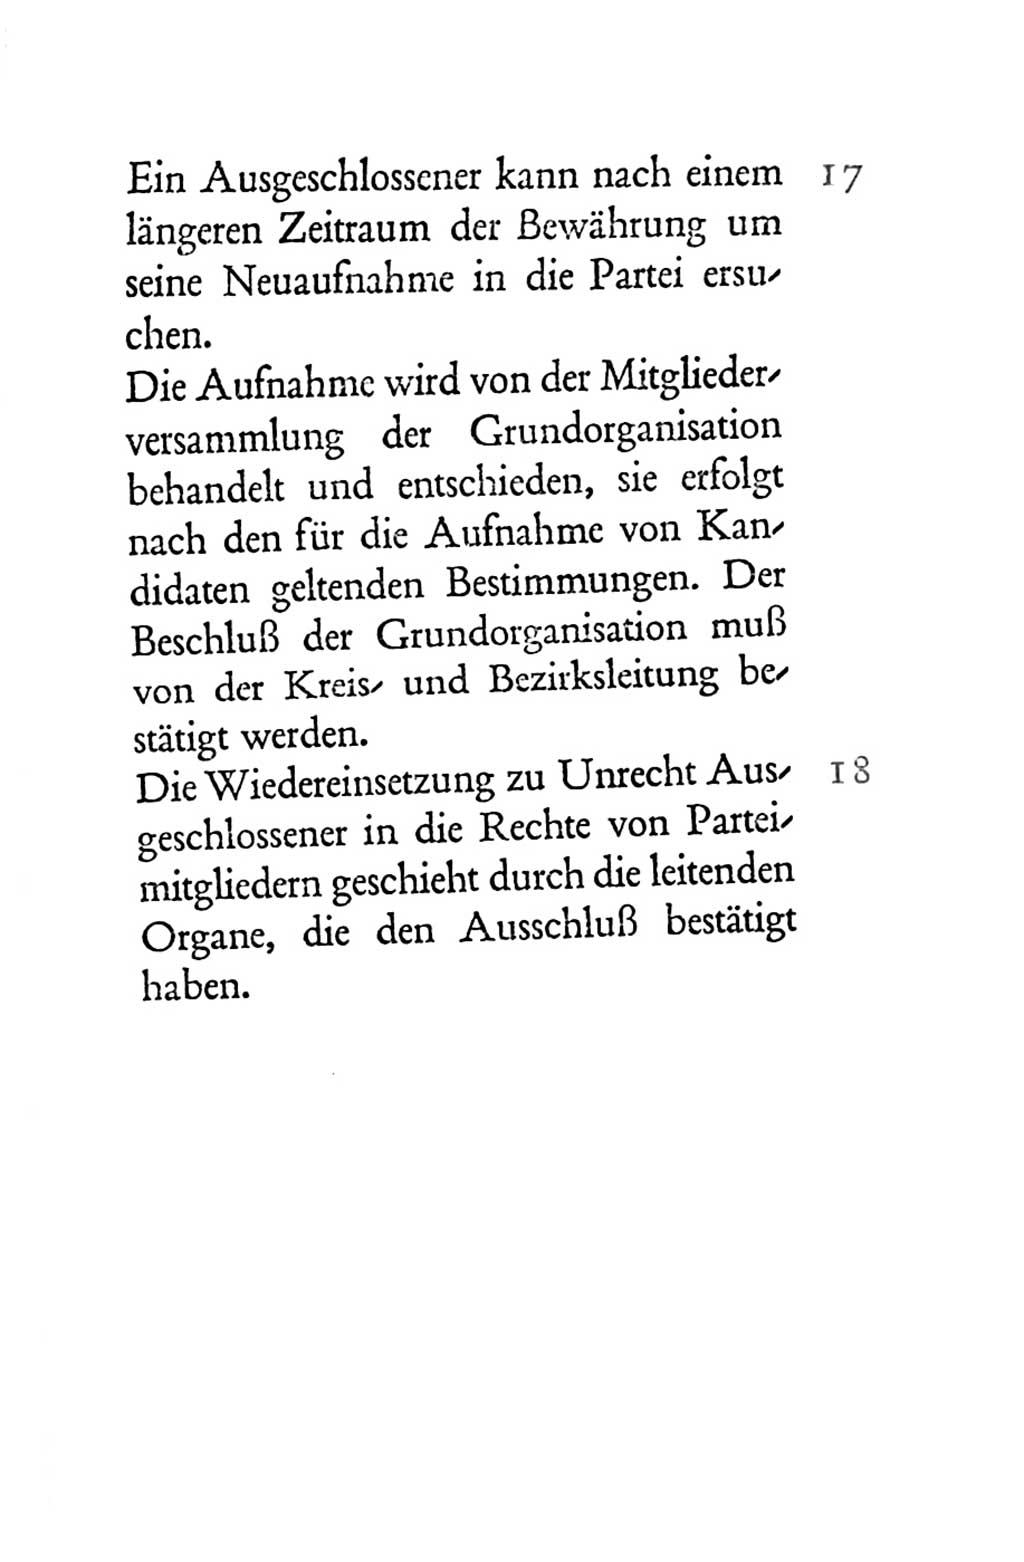 Statut der Sozialistischen Einheitspartei Deutschlands (SED) 1954, Seite 29